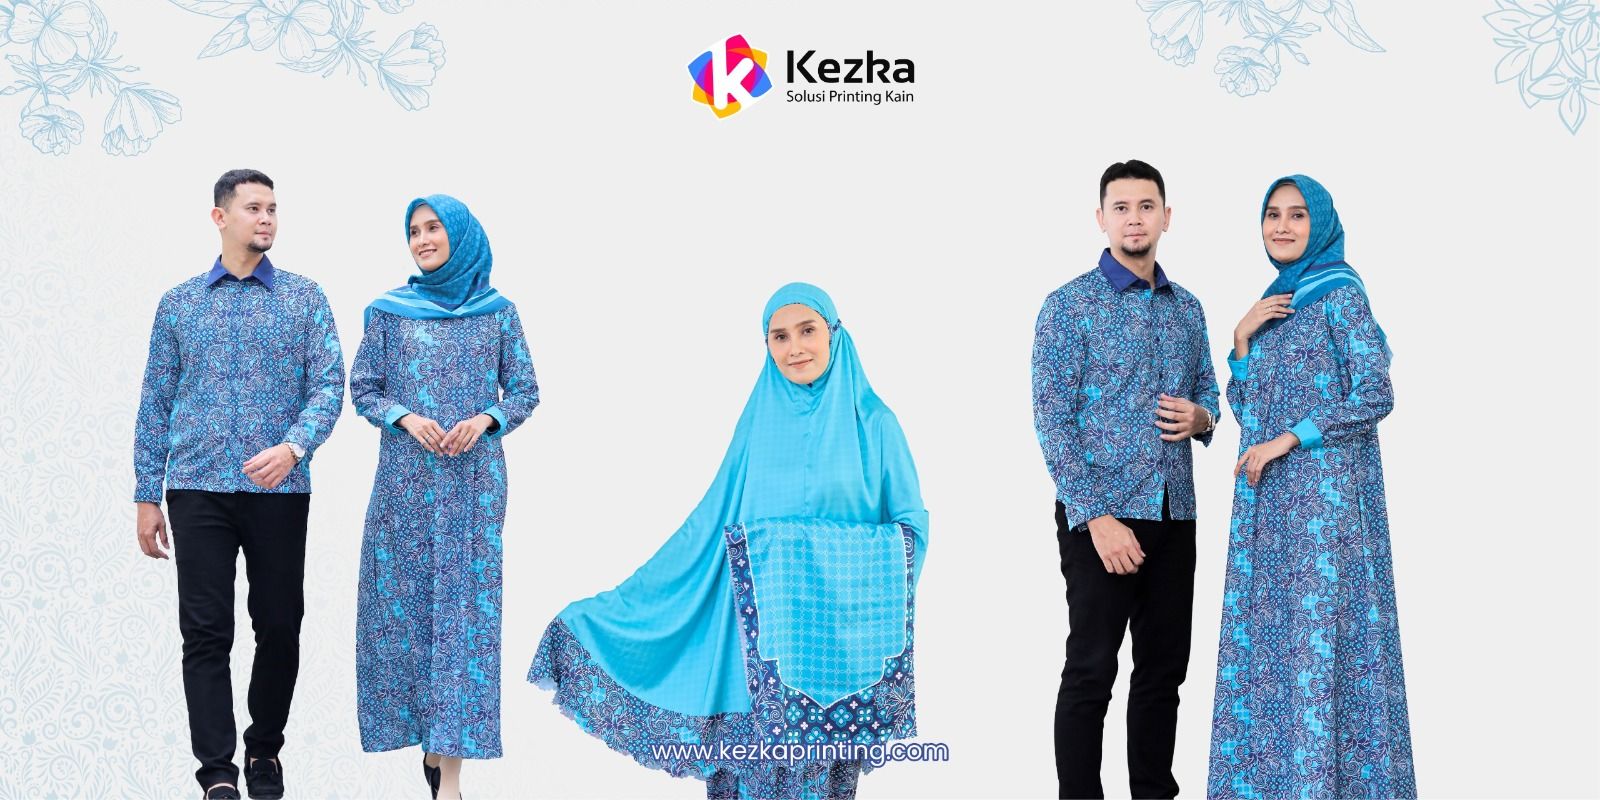 Kezka Printing, sebagai penyedia layanan printing terpercaya mengumumkan peluncuran layanan terbaru yakni Seragam Printing Umrah. 